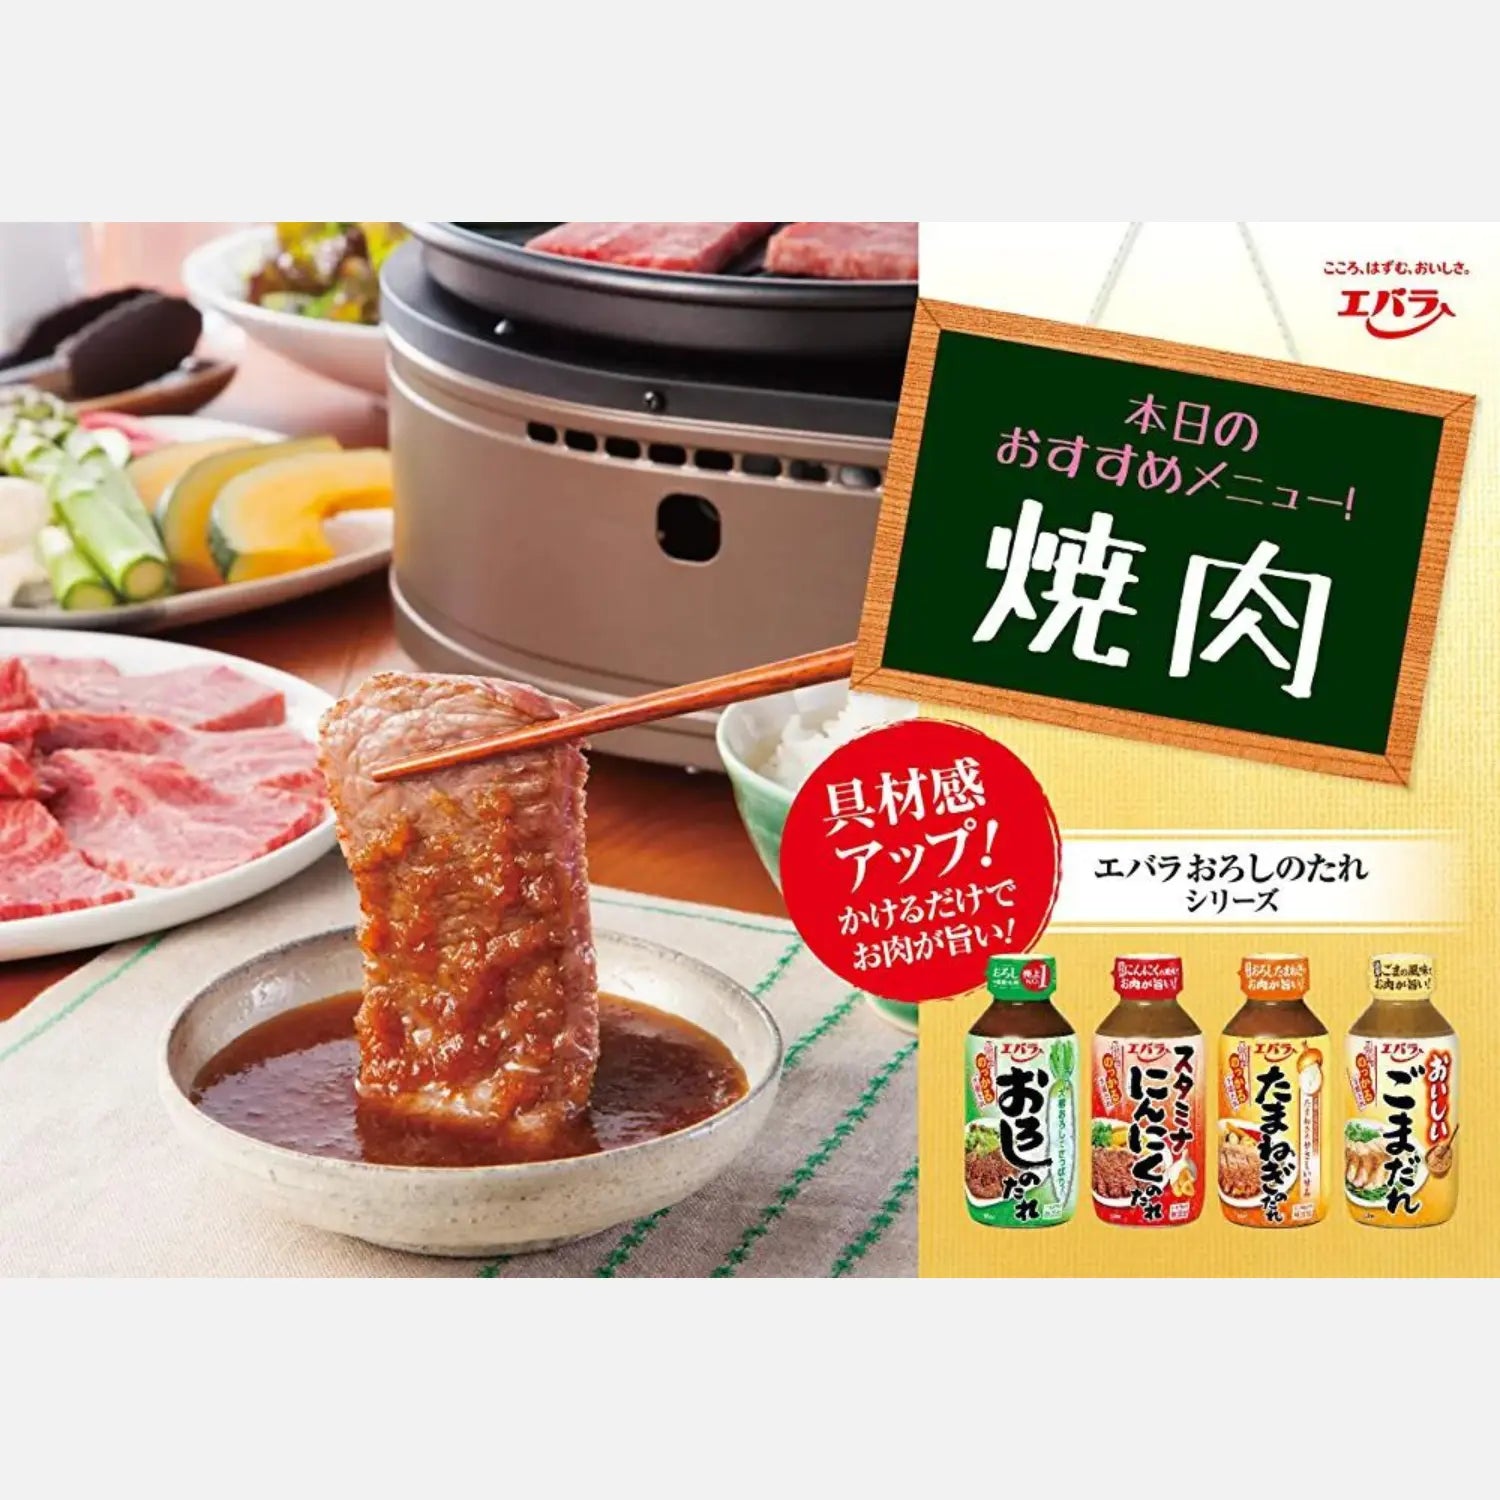 Ebara Barbecue Sauce Stamina Garlic 270g - Buy Me Japan